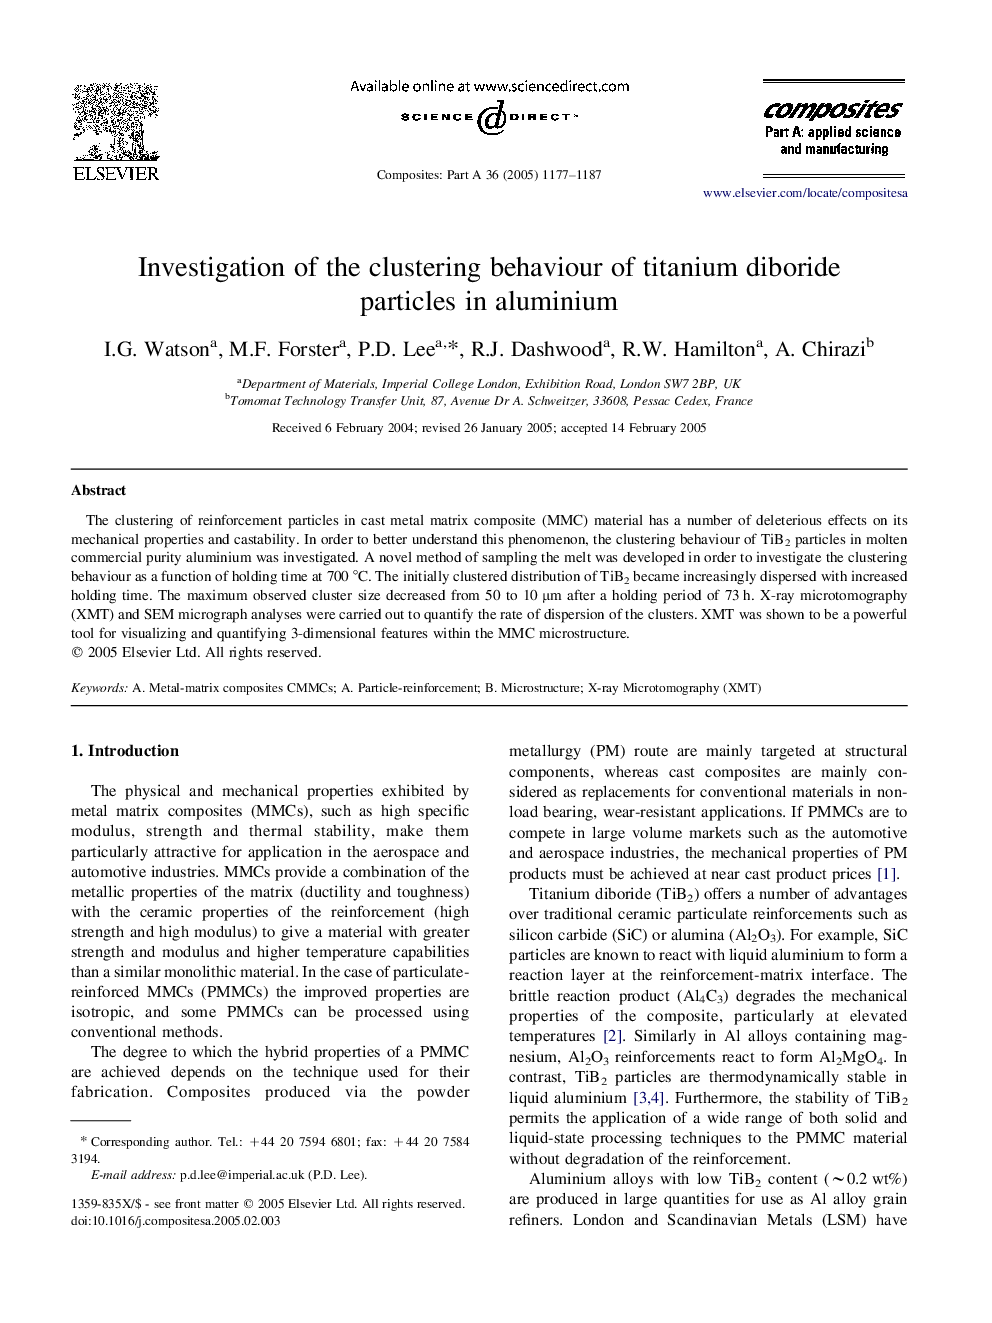 Investigation of the clustering behaviour of titanium diboride particles in aluminium